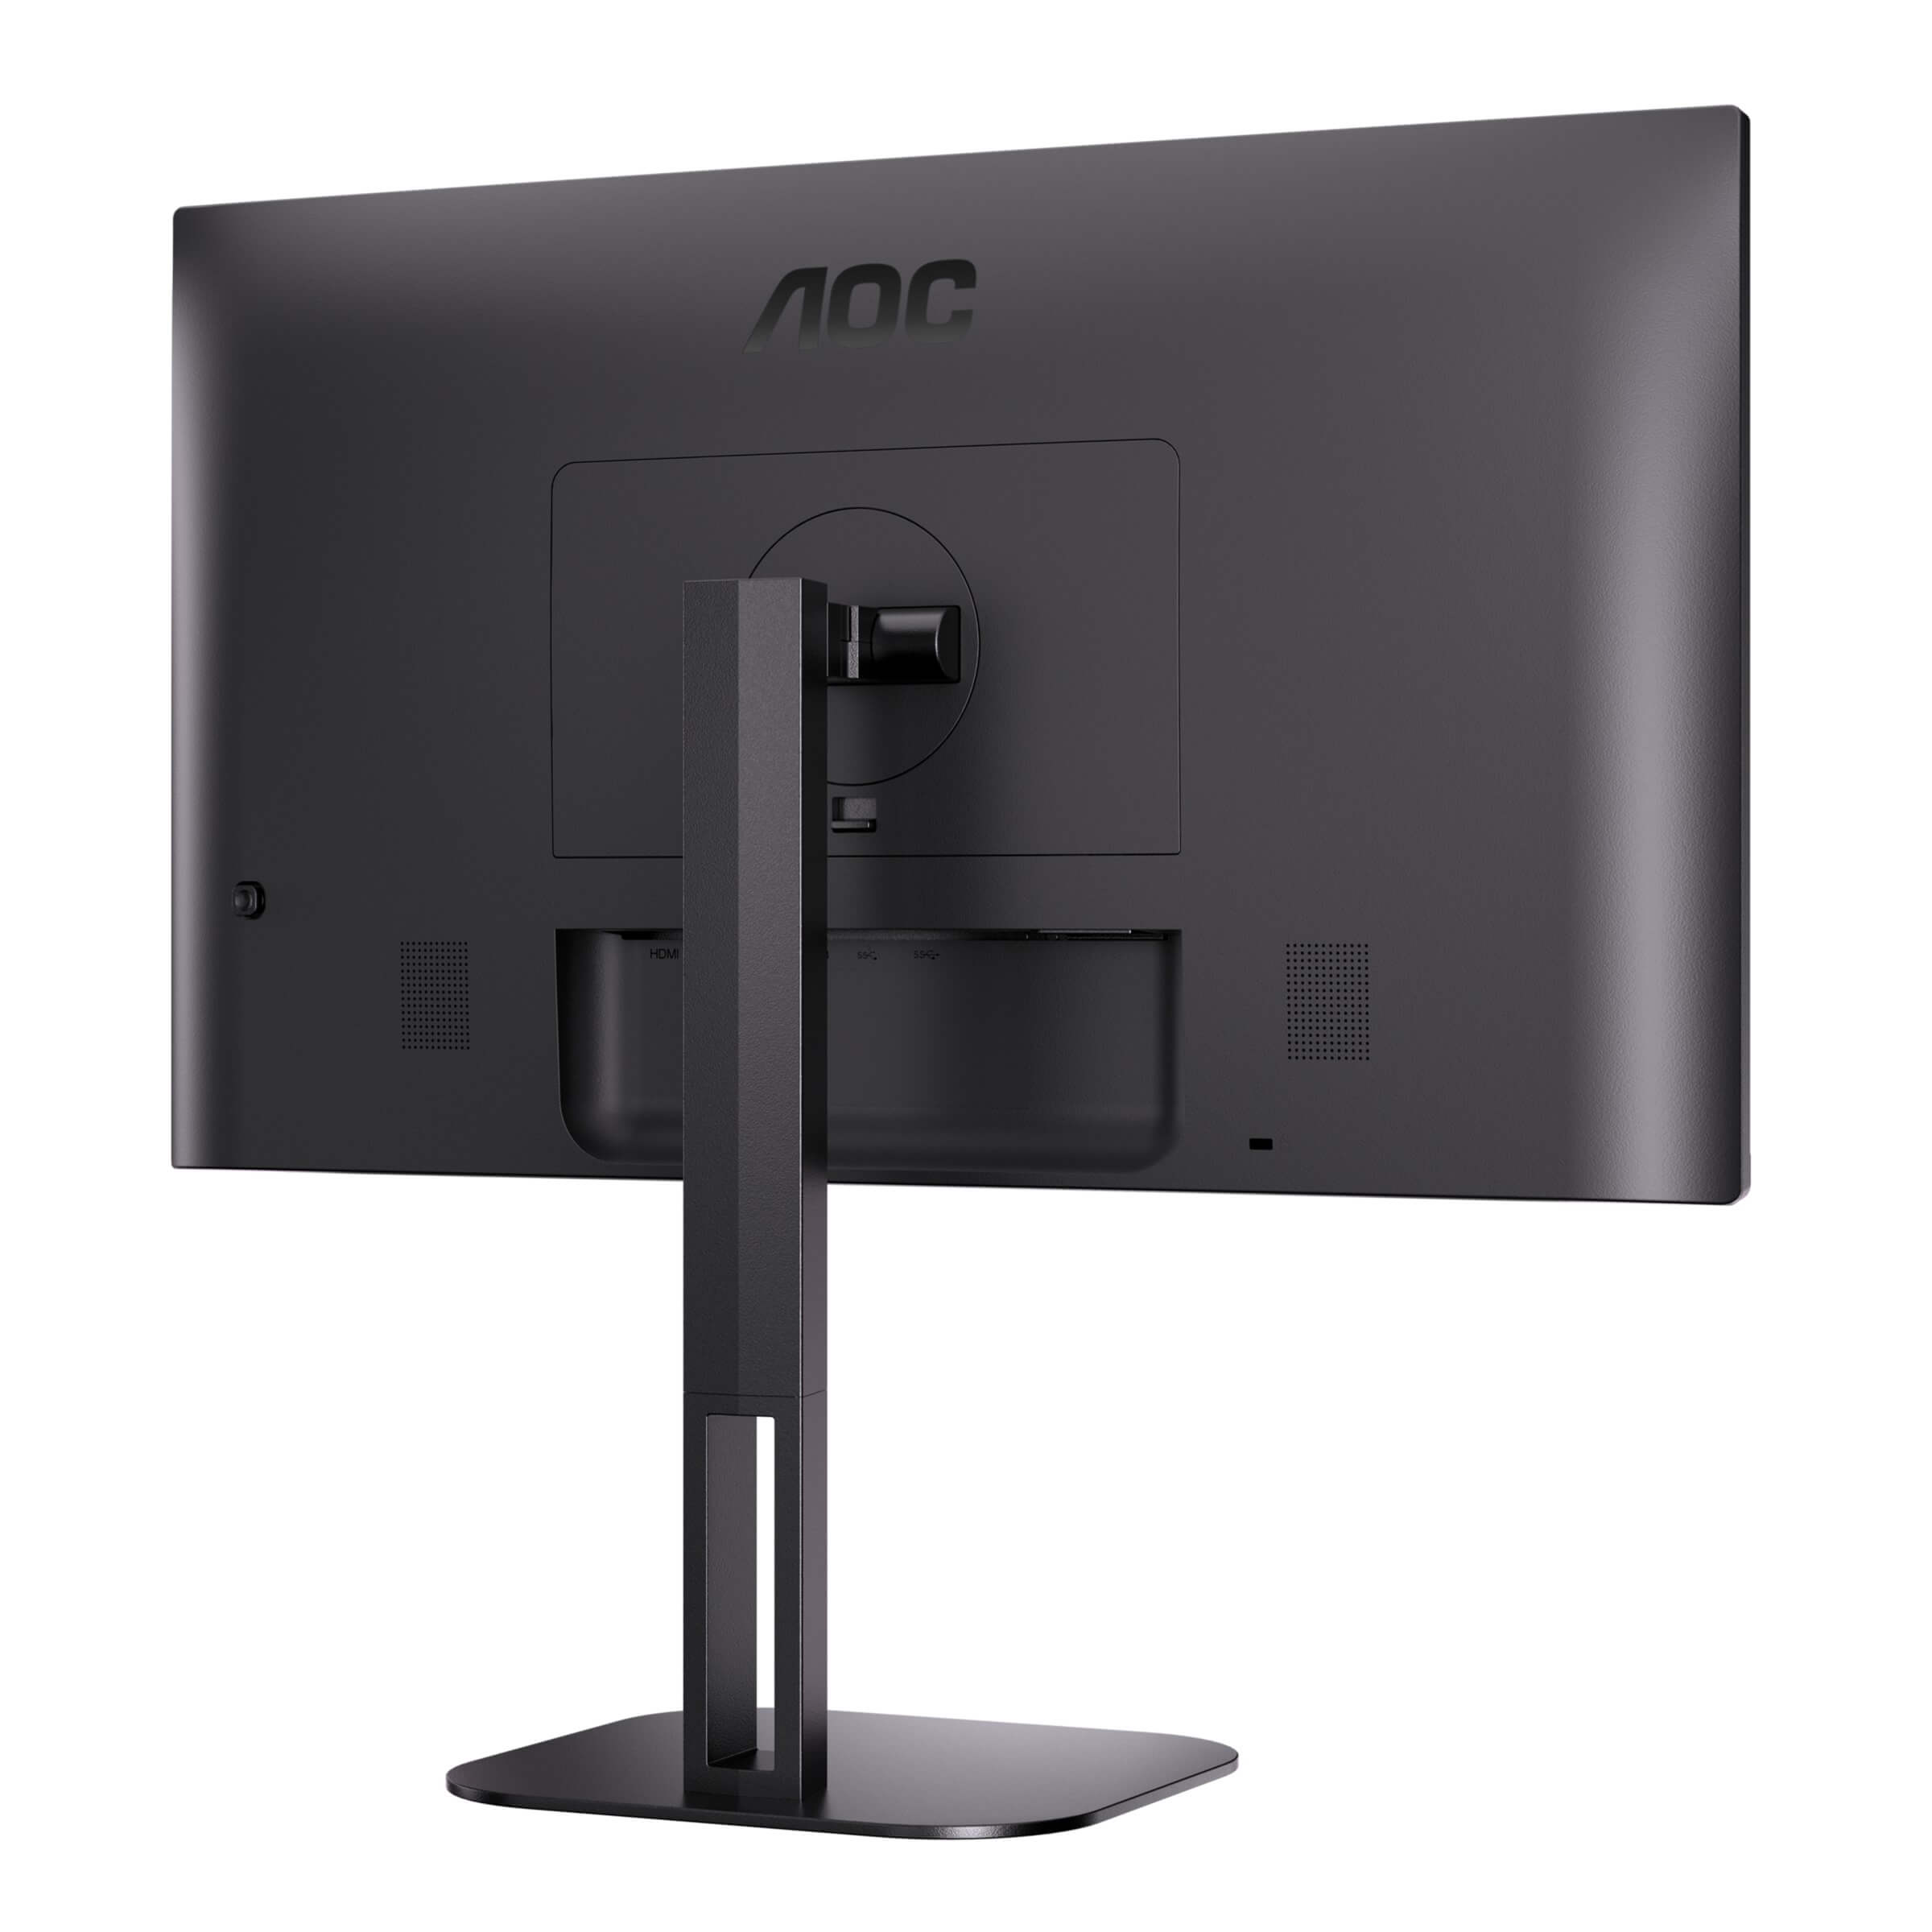 AOC presenta sus nuevos monitores V5 con conectividad USB-C 2